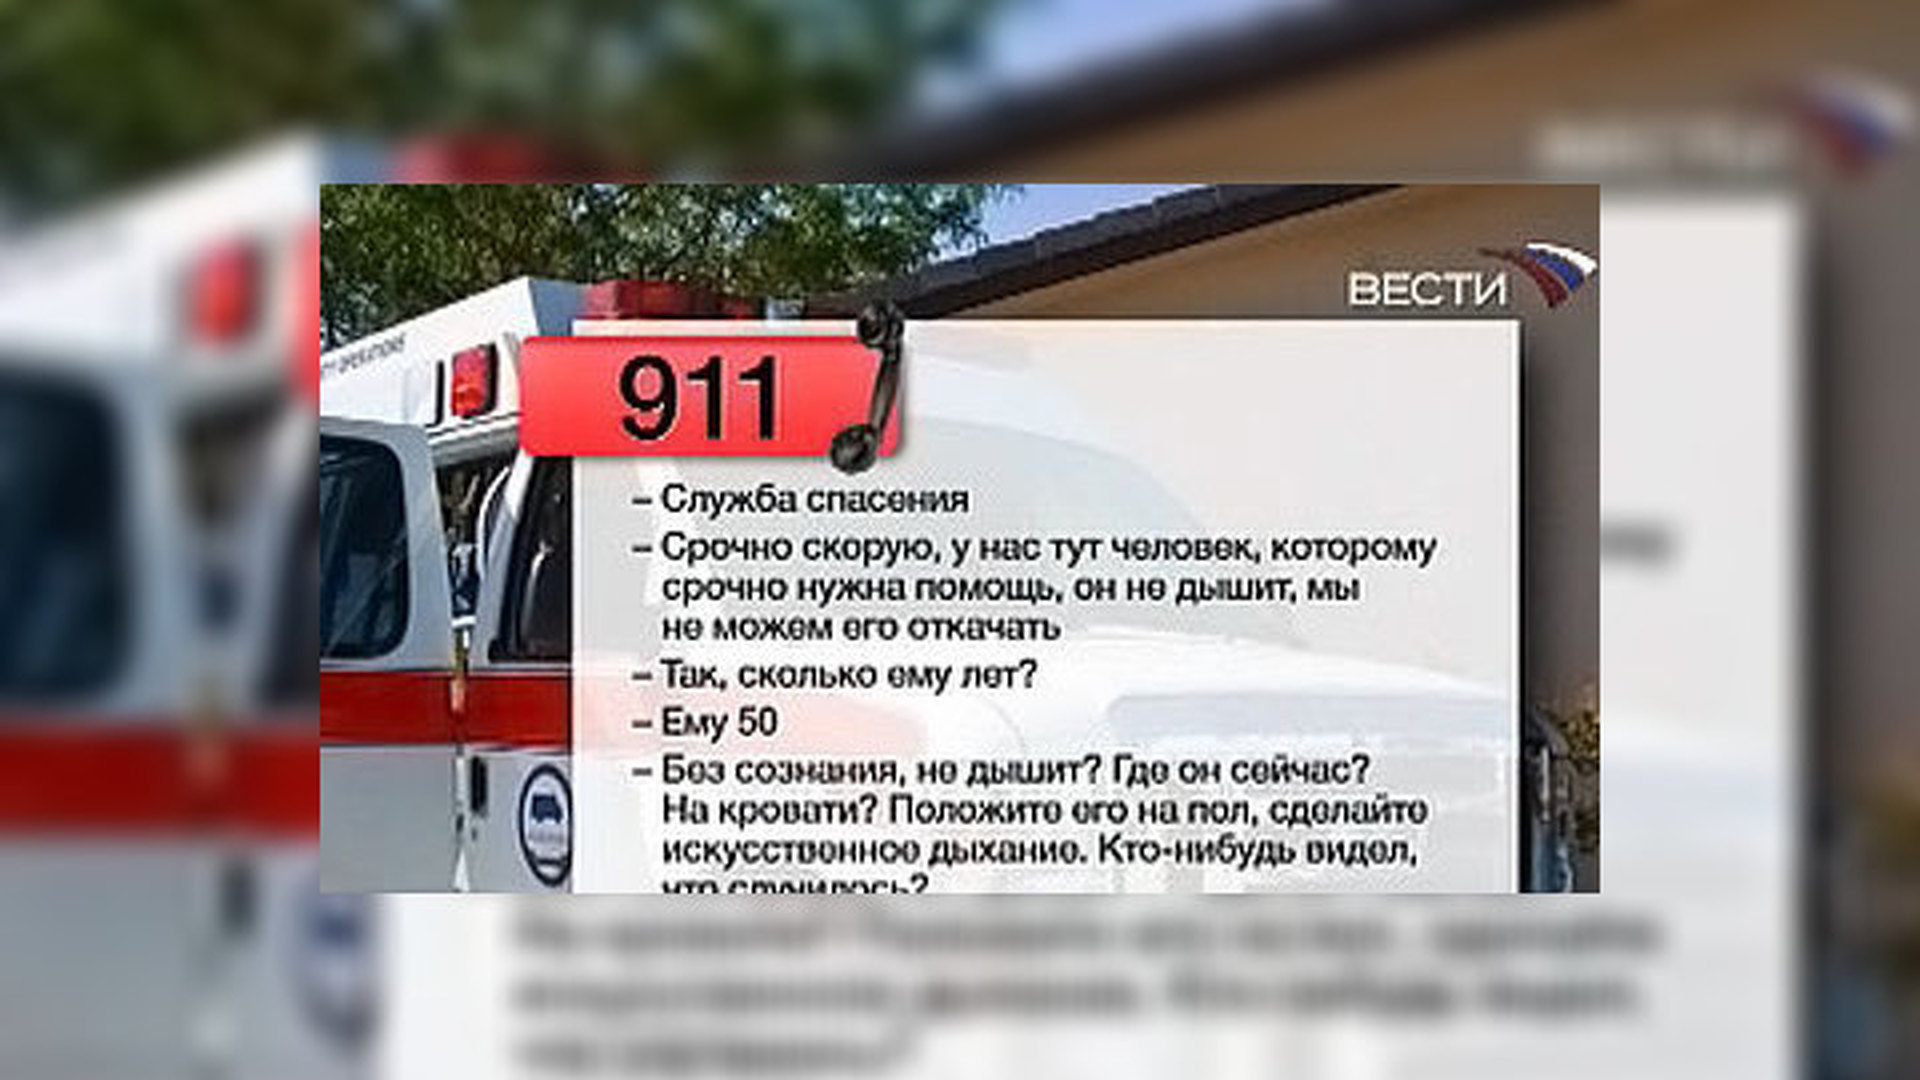 911 Экстренная служба